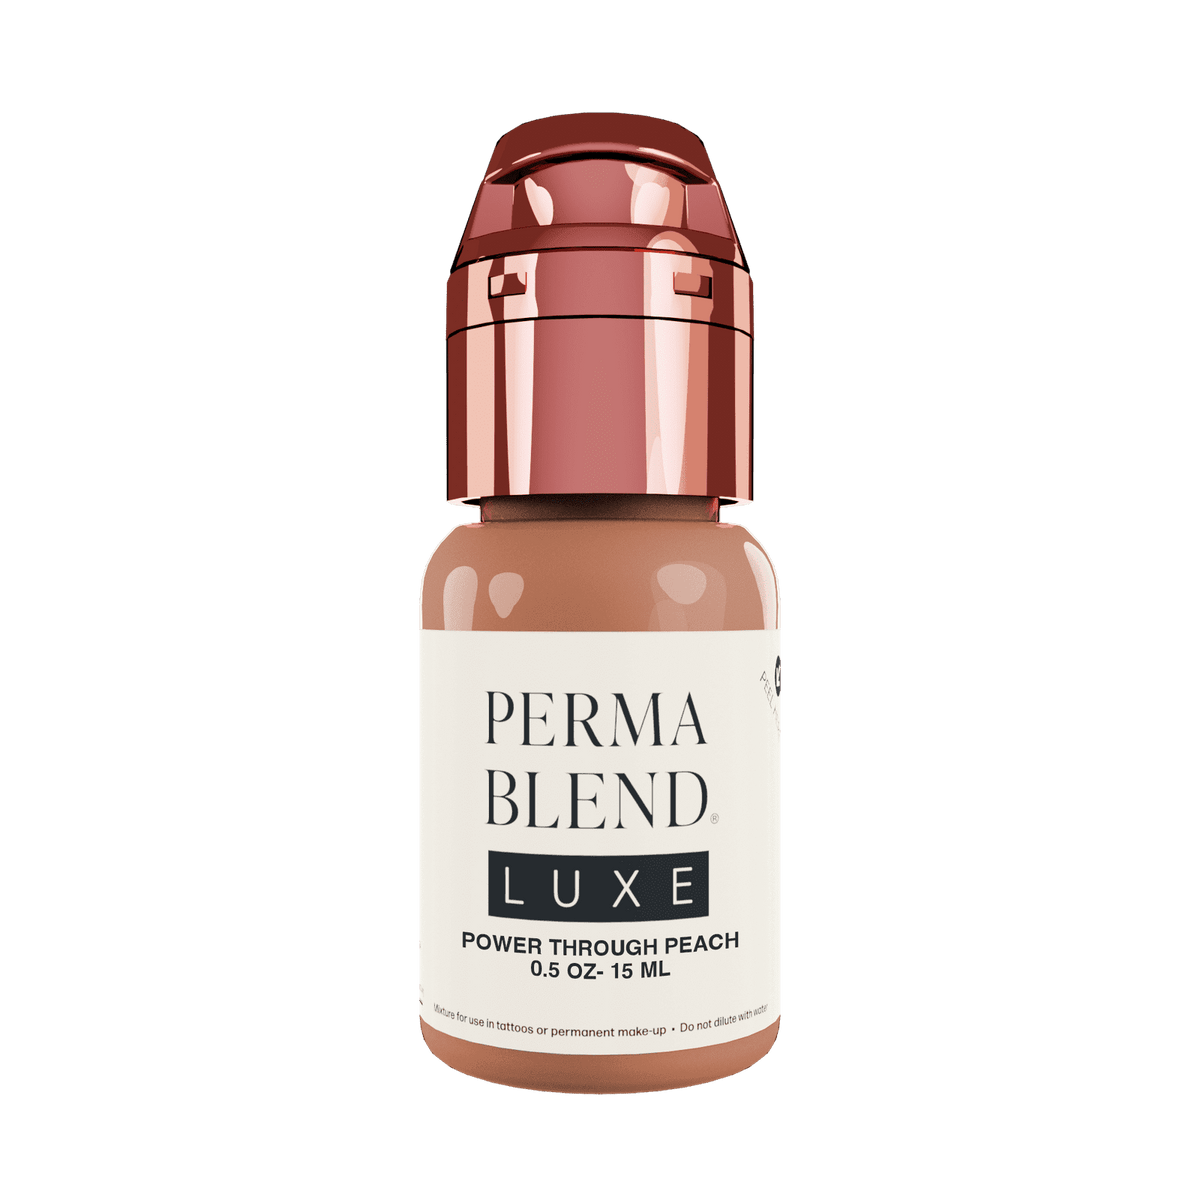 Perma Blend Luxe Power Through Peach